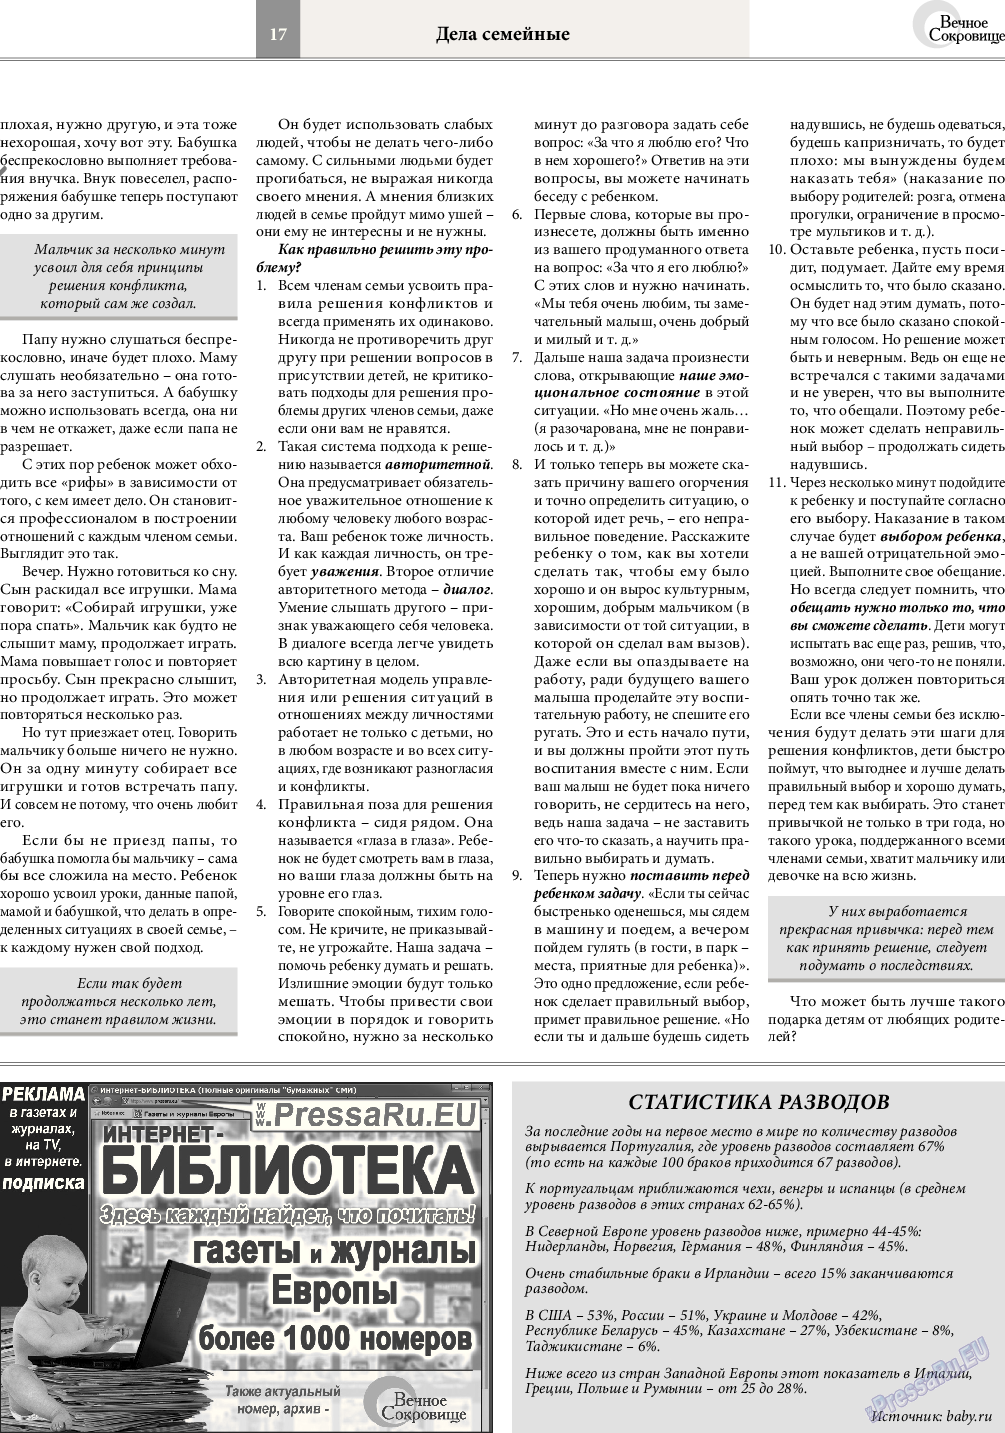 Вечное сокровище, газета. 2017 №1 стр.17